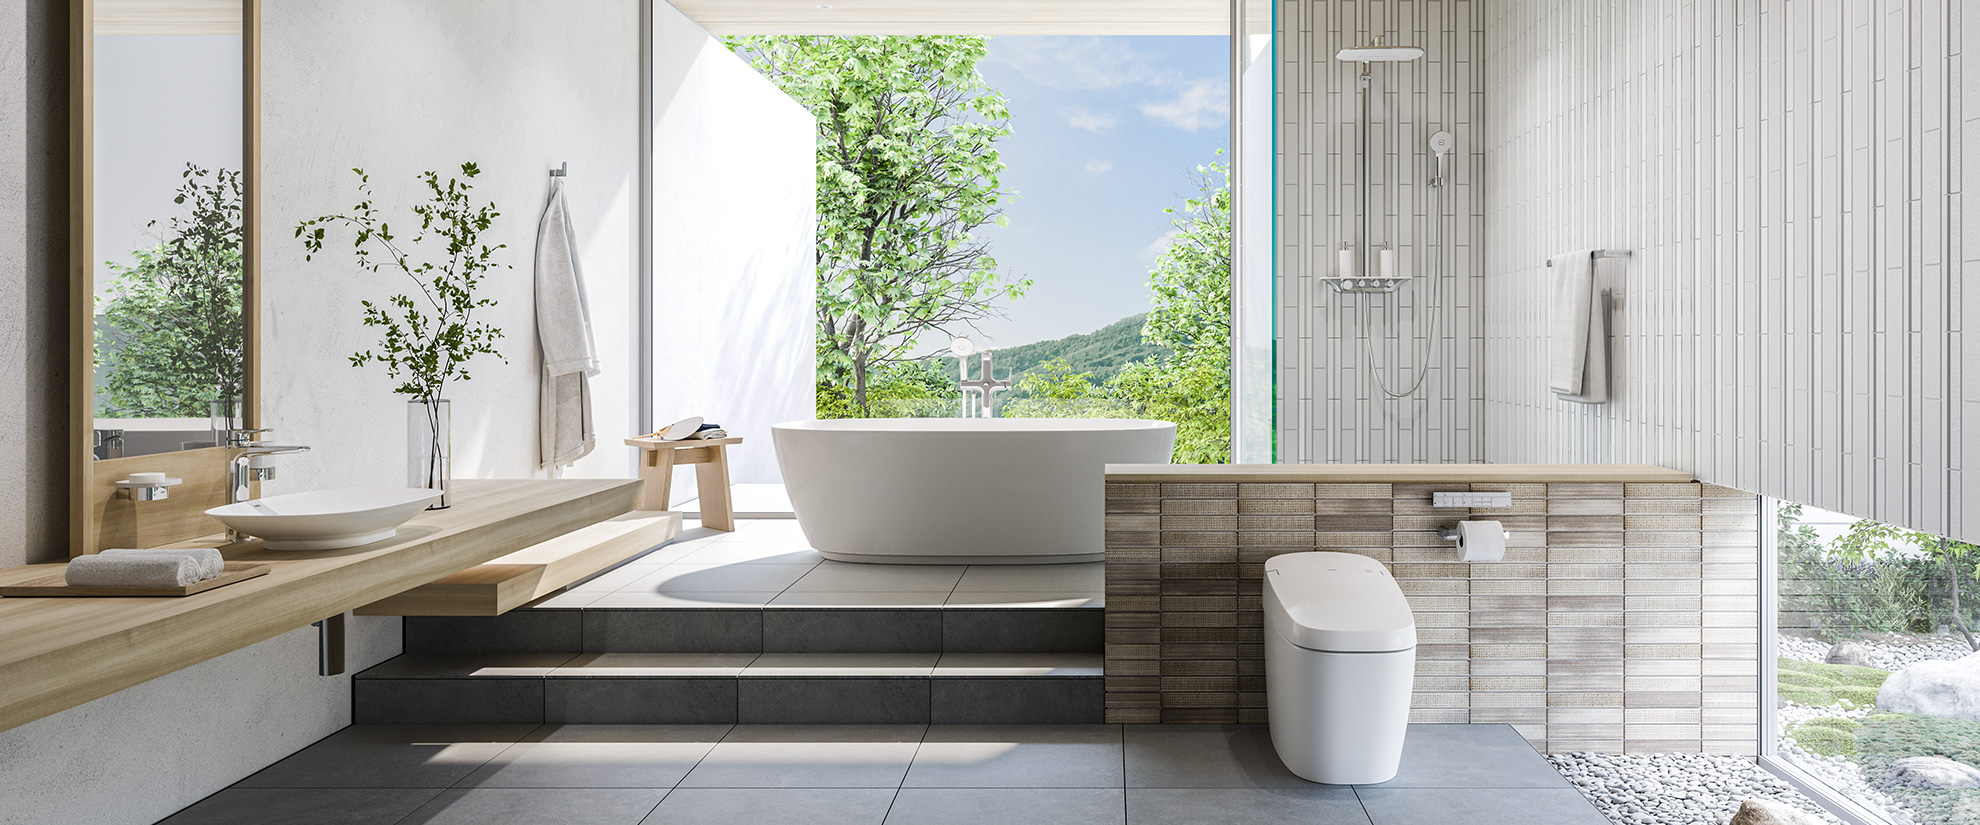 INAX cung cấp các sản phẩm phòng tắm bồn với thiết kế hiện đại và tiện lợi hơn bao giờ hết. Với những bồn tắm cao cấp, phòng tắm của bạn sẽ trở nên đầy đủ các tiện nghi và không gian thư giãn khiến bạn thực sự hài lòng.